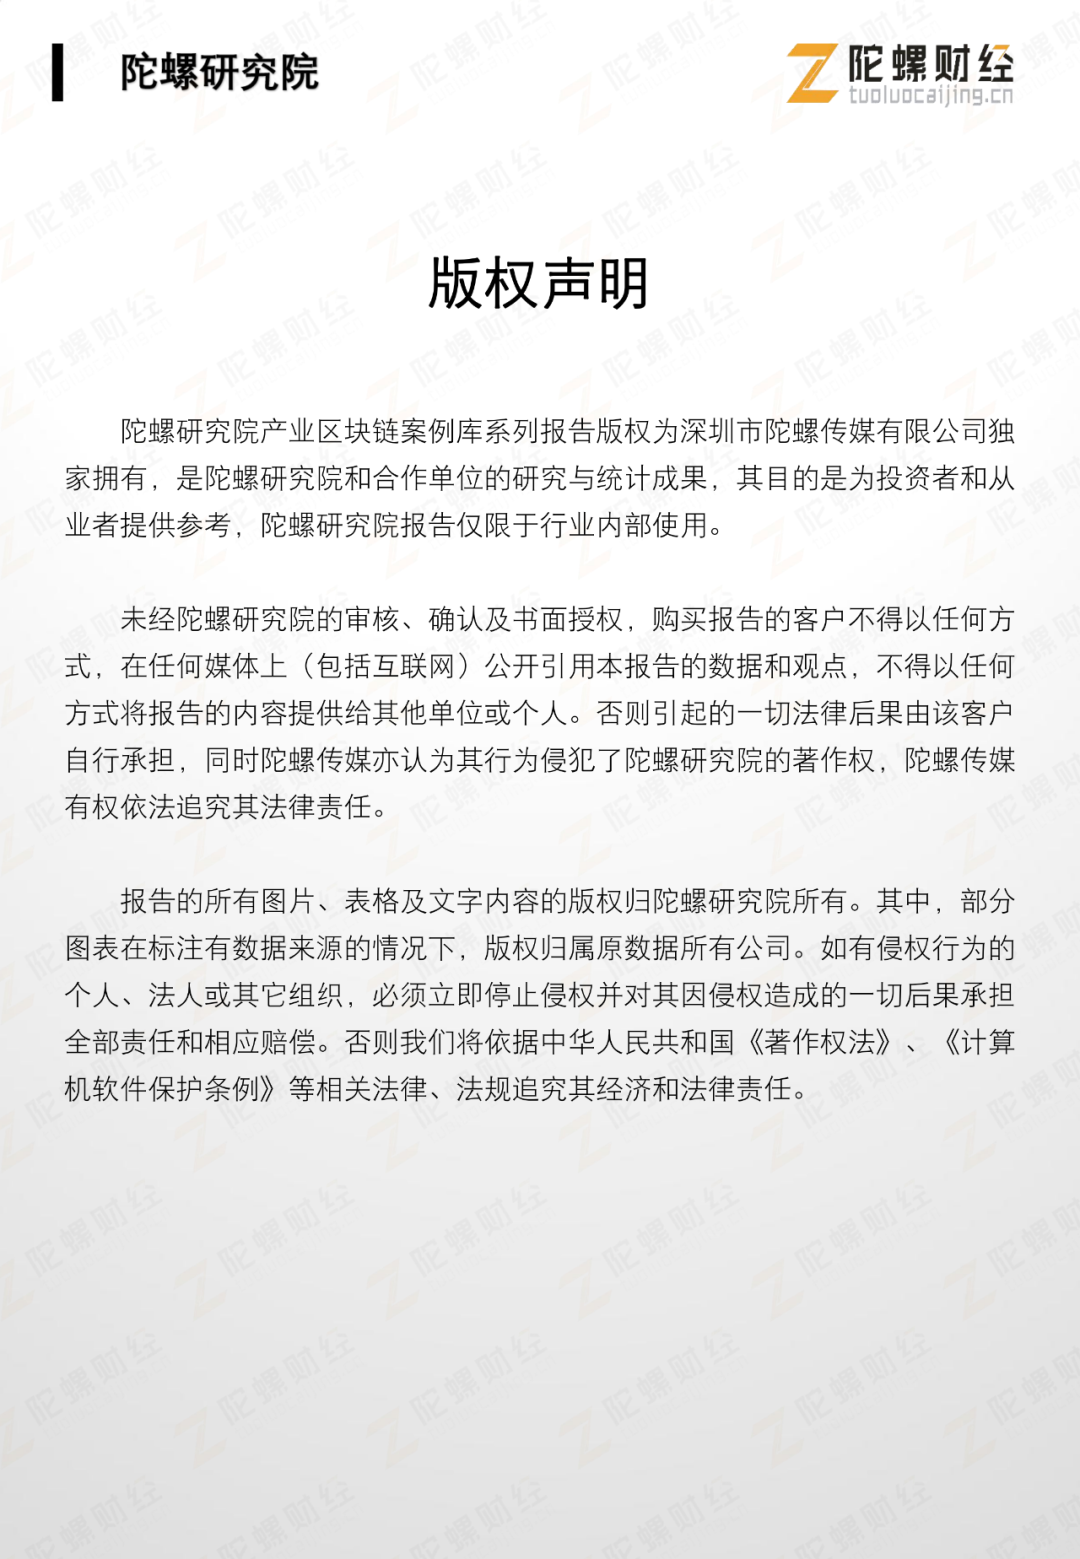 网录科技行业案例 | 贵阳市红云社区助困区块链系统